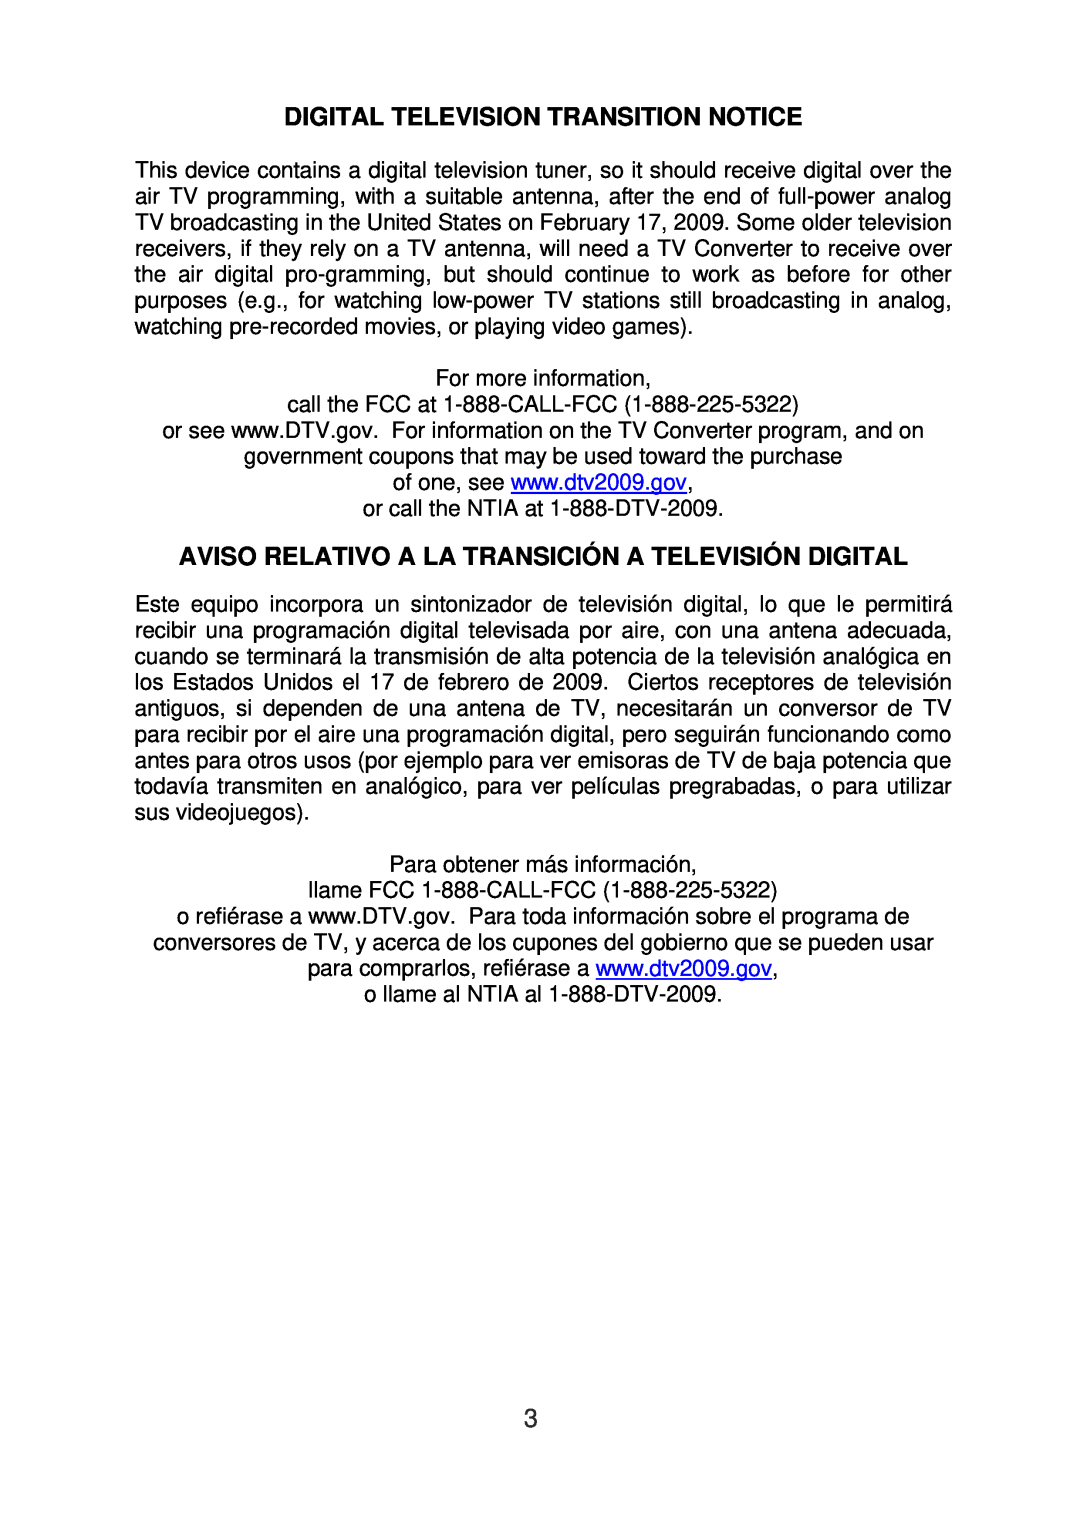 AOC L24H898 manual Digital Television Transition Notice, Aviso Relativo A La Transición A Televisión Digital 